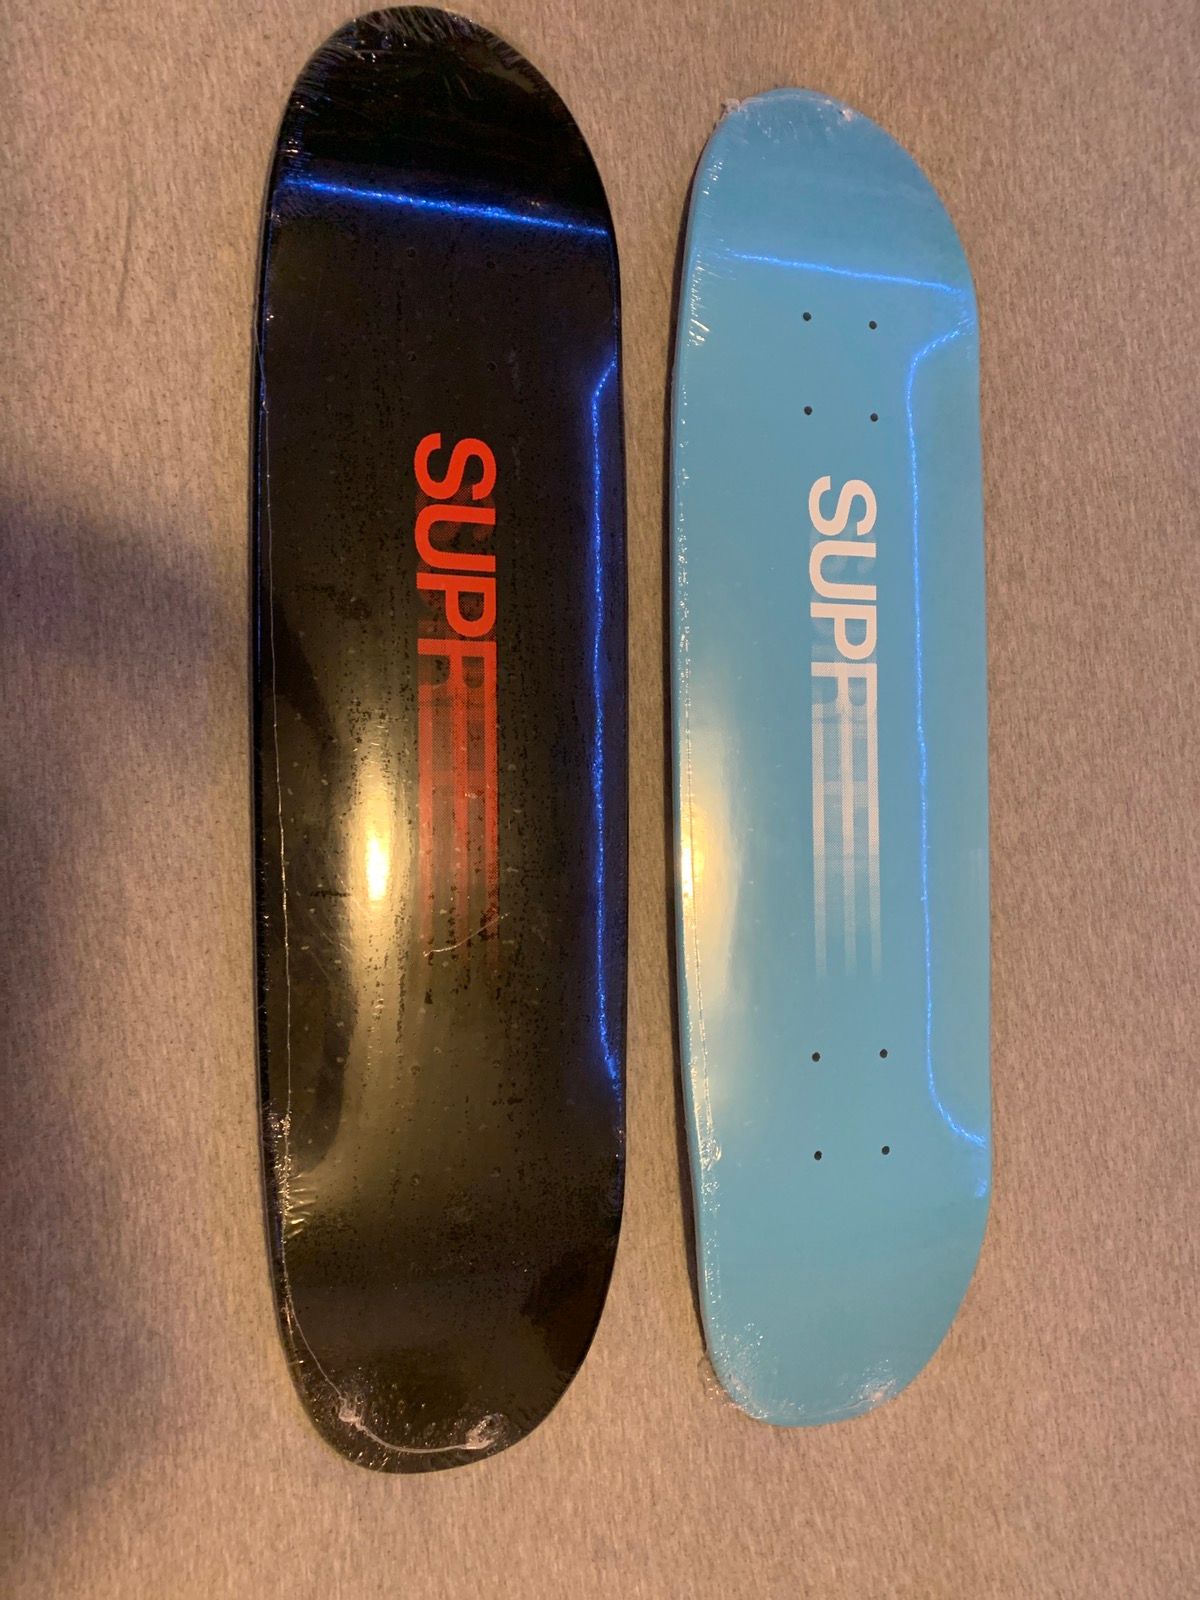 Supreme Supreme motion logo skateboards / set of 2   Grailed